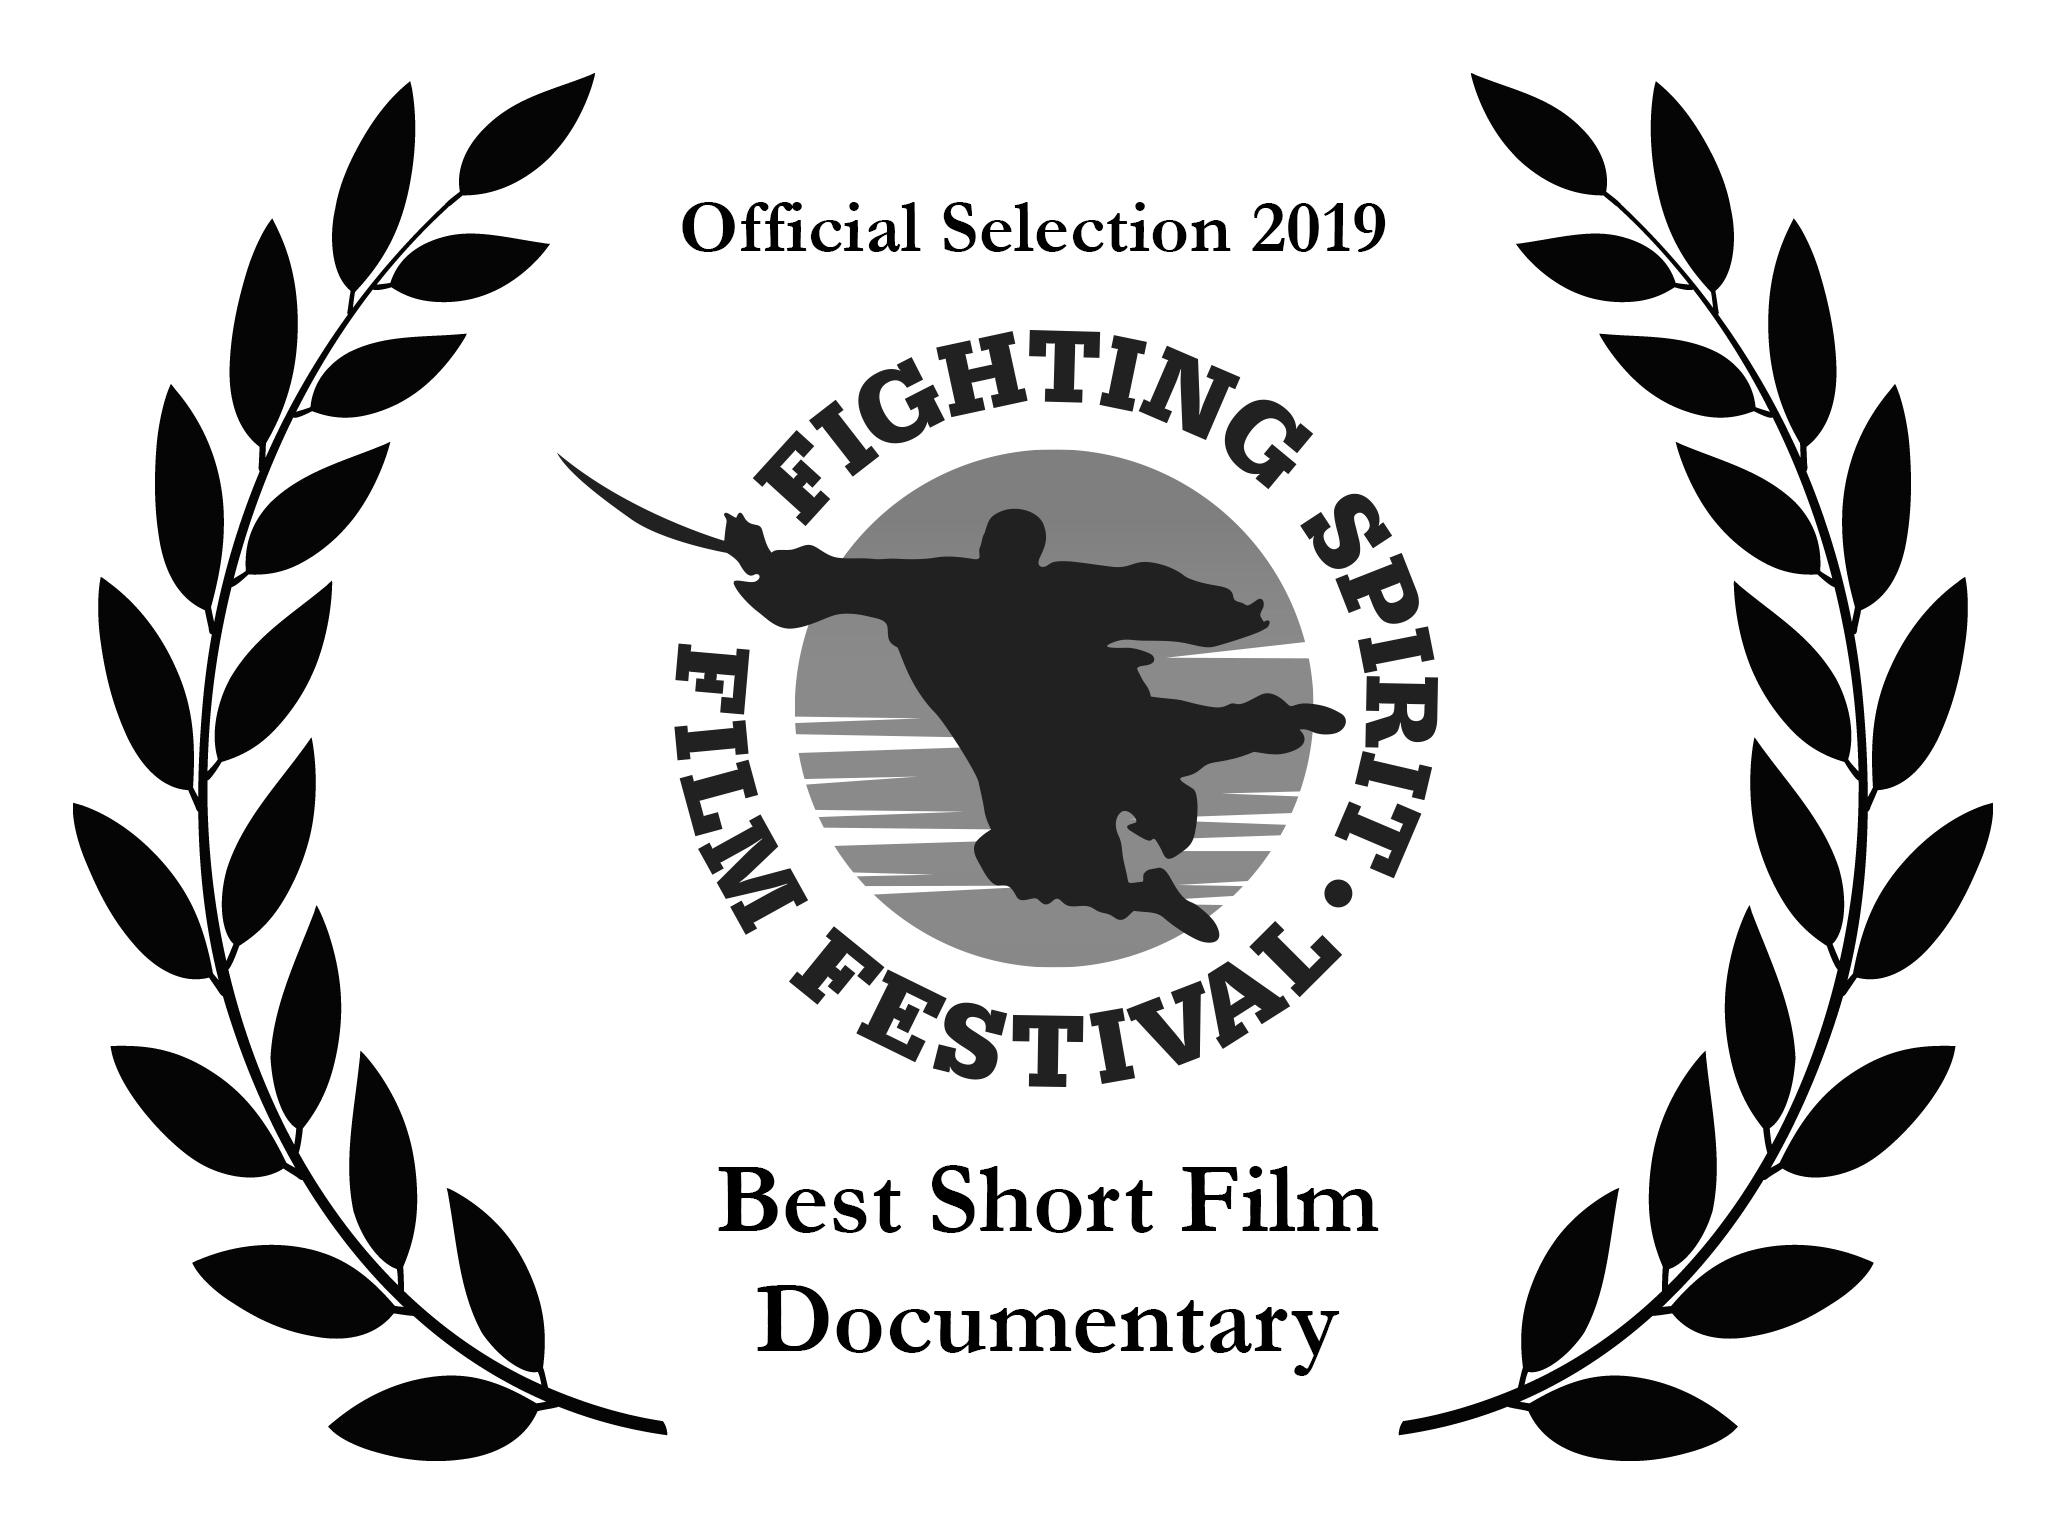 Fighting_Spirit_Film_Festival_2019_best_short_film_documentary.jpg